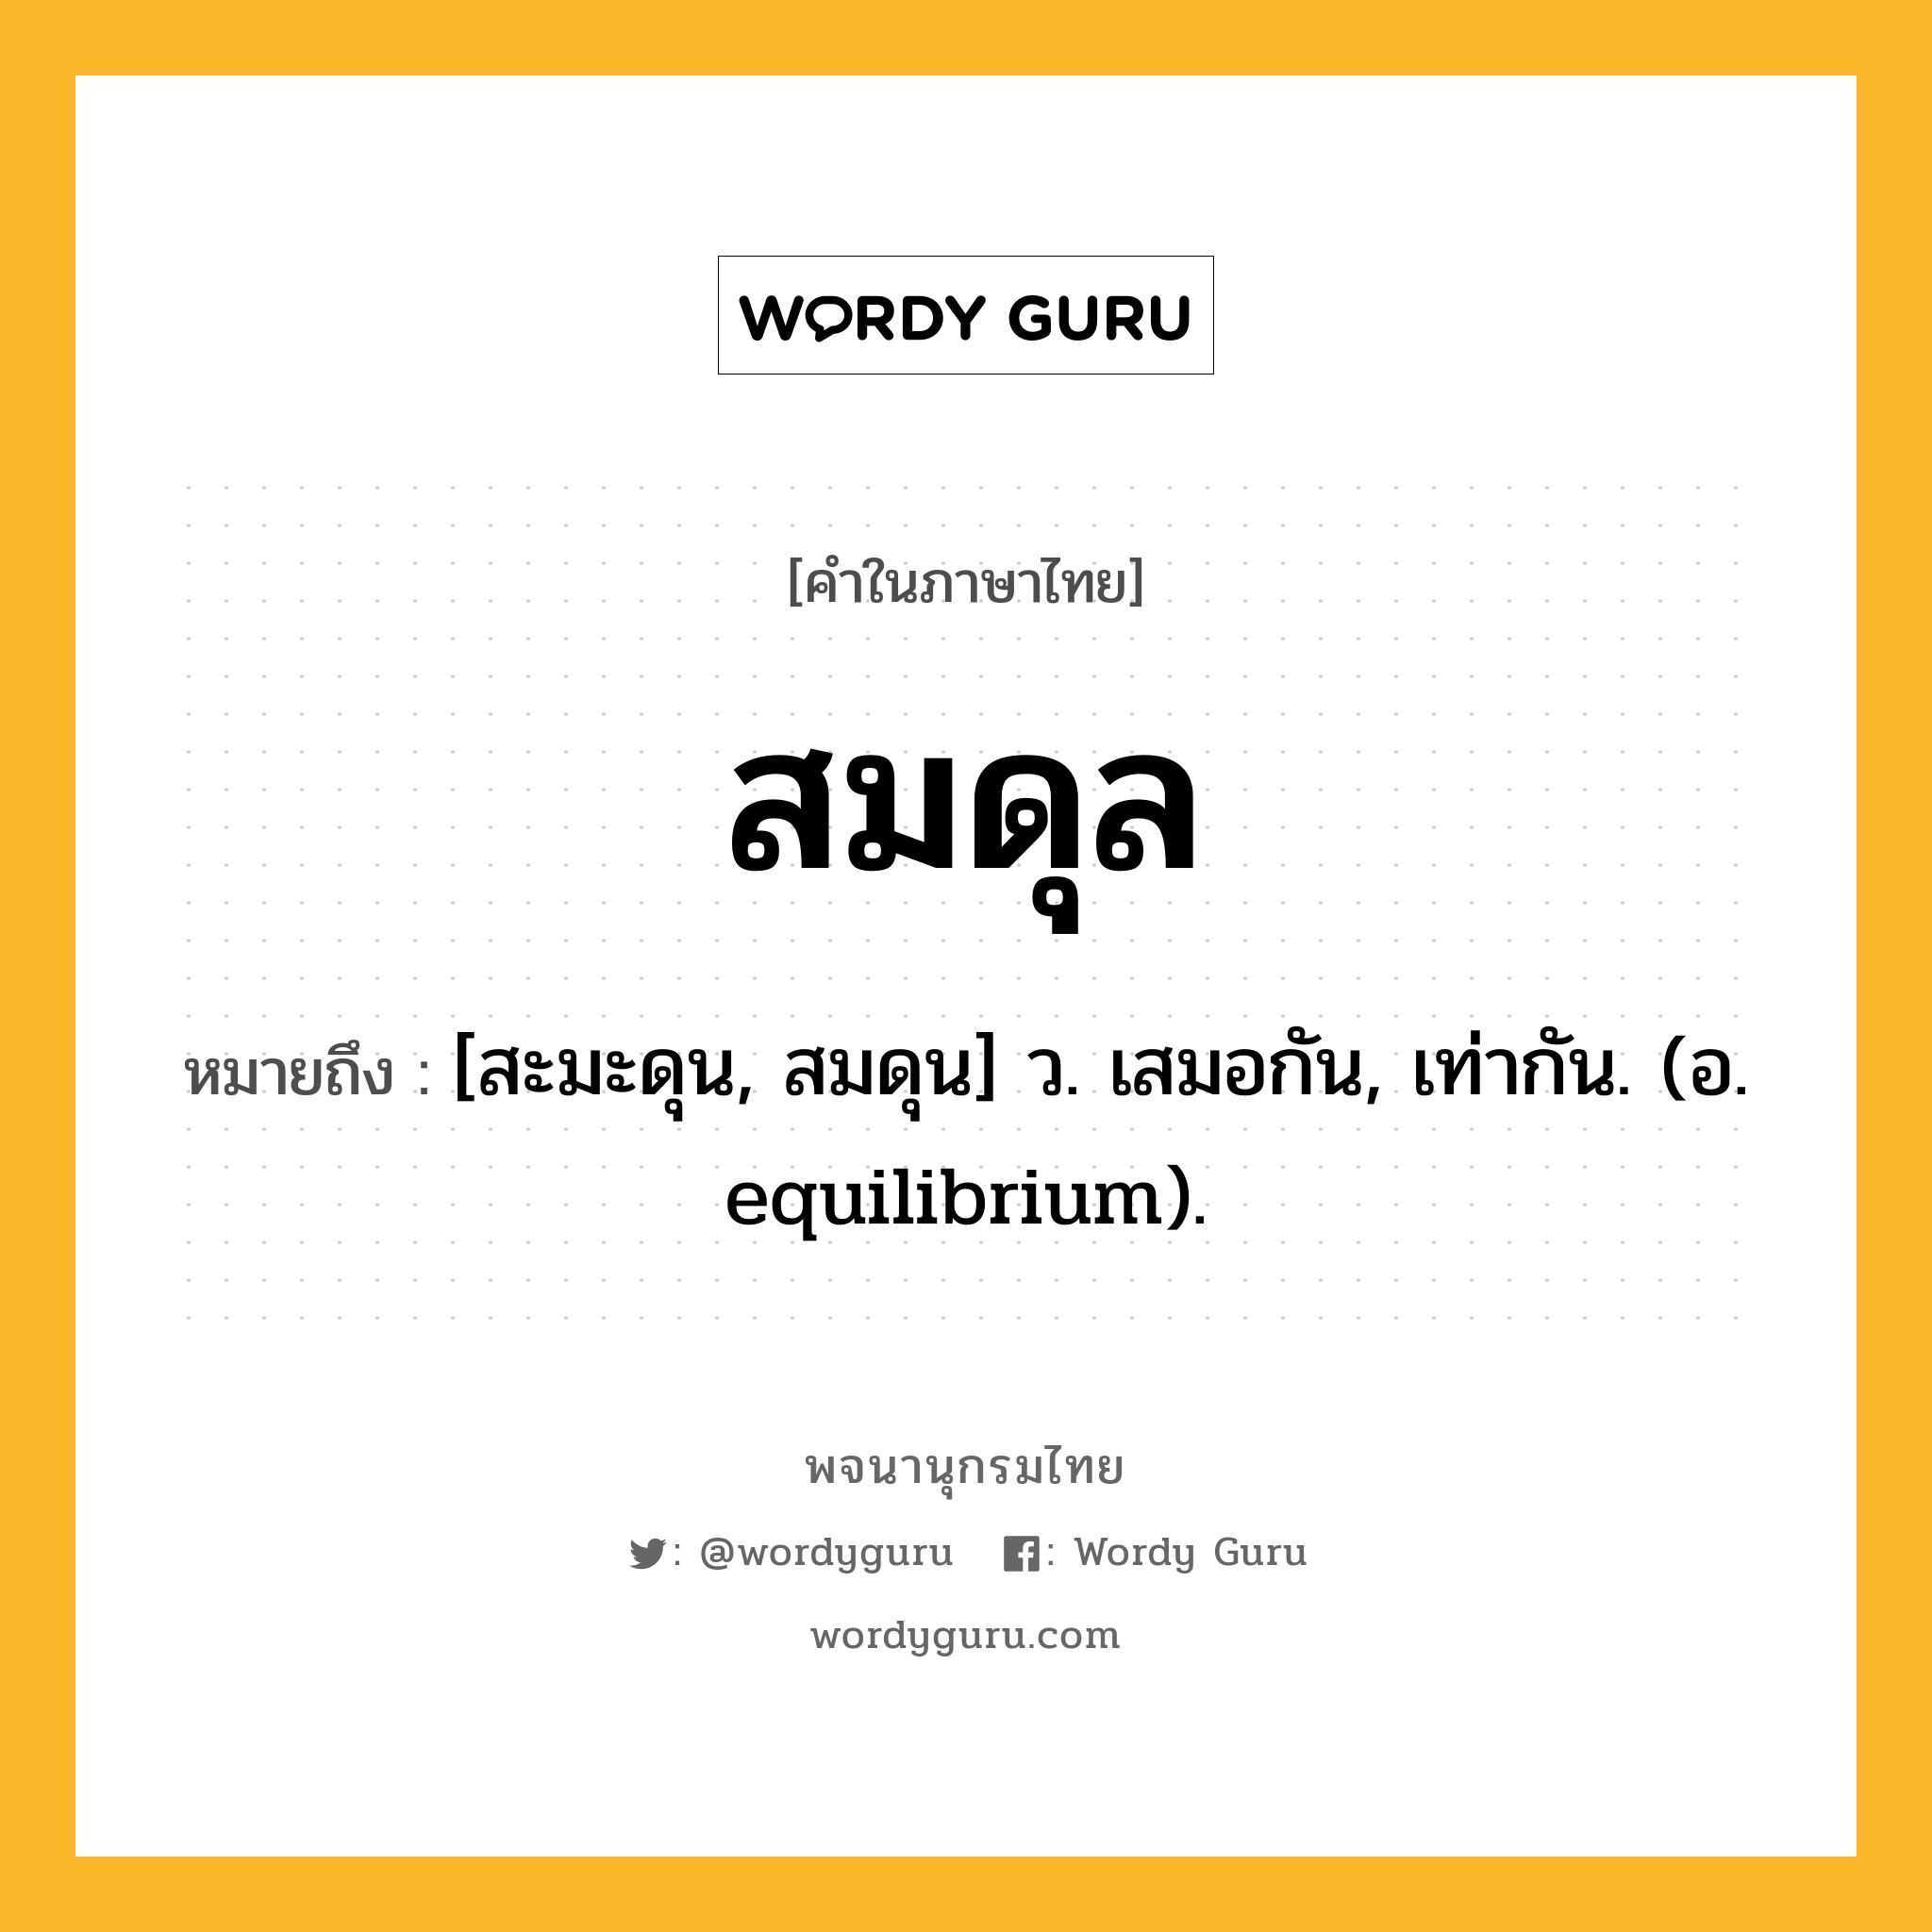 สมดุล หมายถึงอะไร?, คำในภาษาไทย สมดุล หมายถึง [สะมะดุน, สมดุน] ว. เสมอกัน, เท่ากัน. (อ. equilibrium).